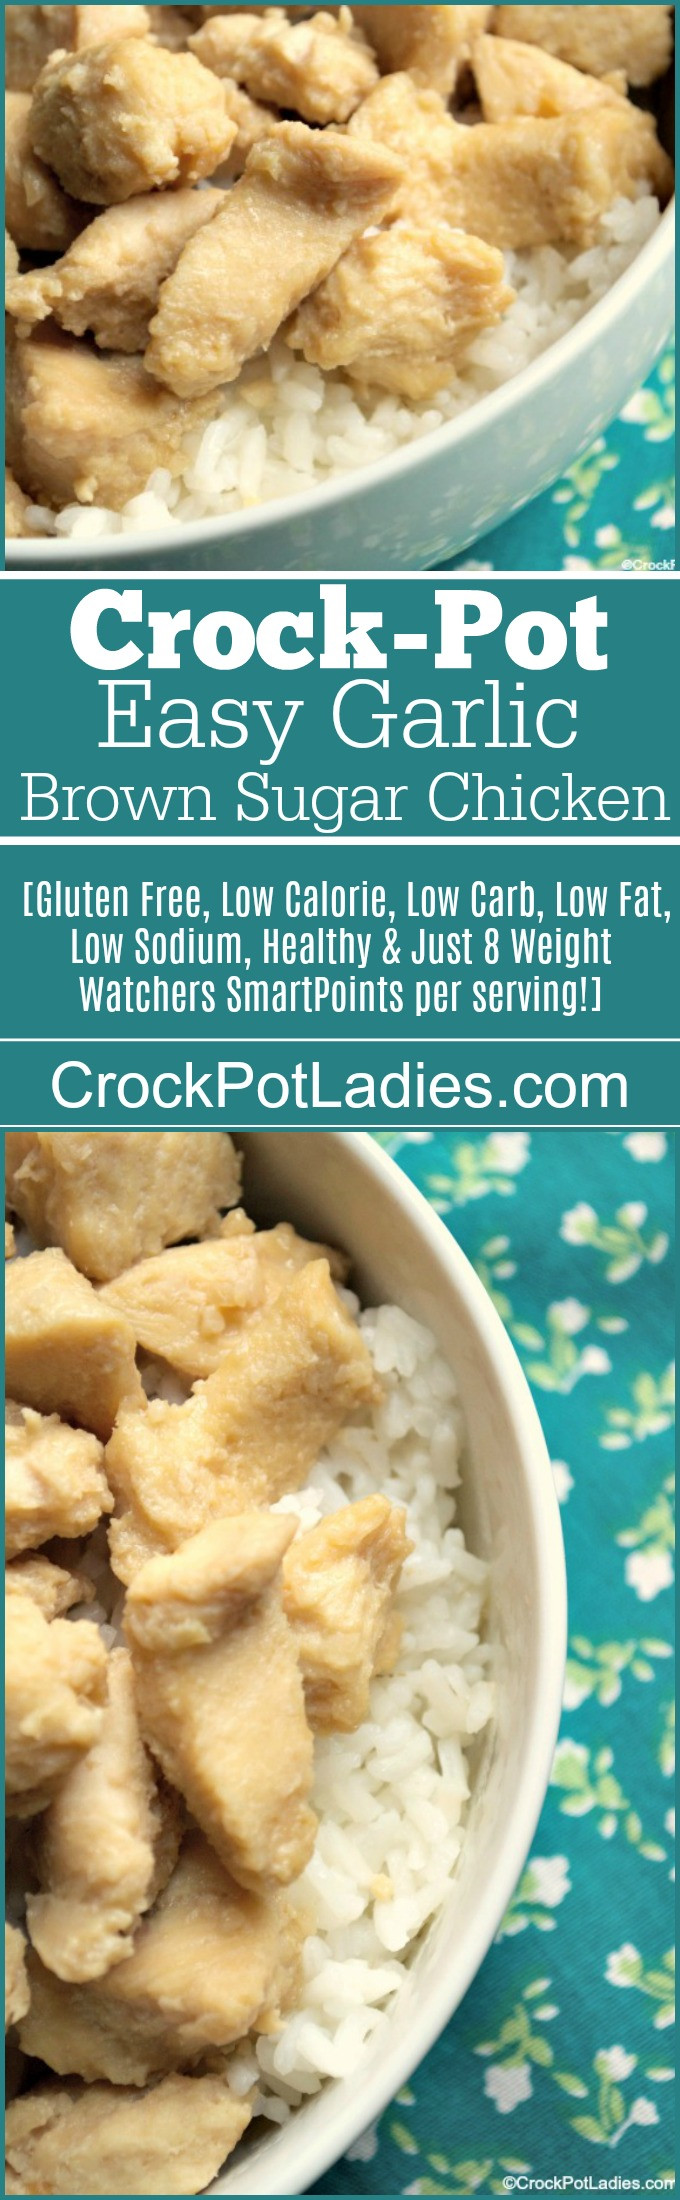 Low Fat Low Sodium Chicken Recipes
 Crock Pot Easy Garlic Brown Sugar Chicken Crock Pot La s